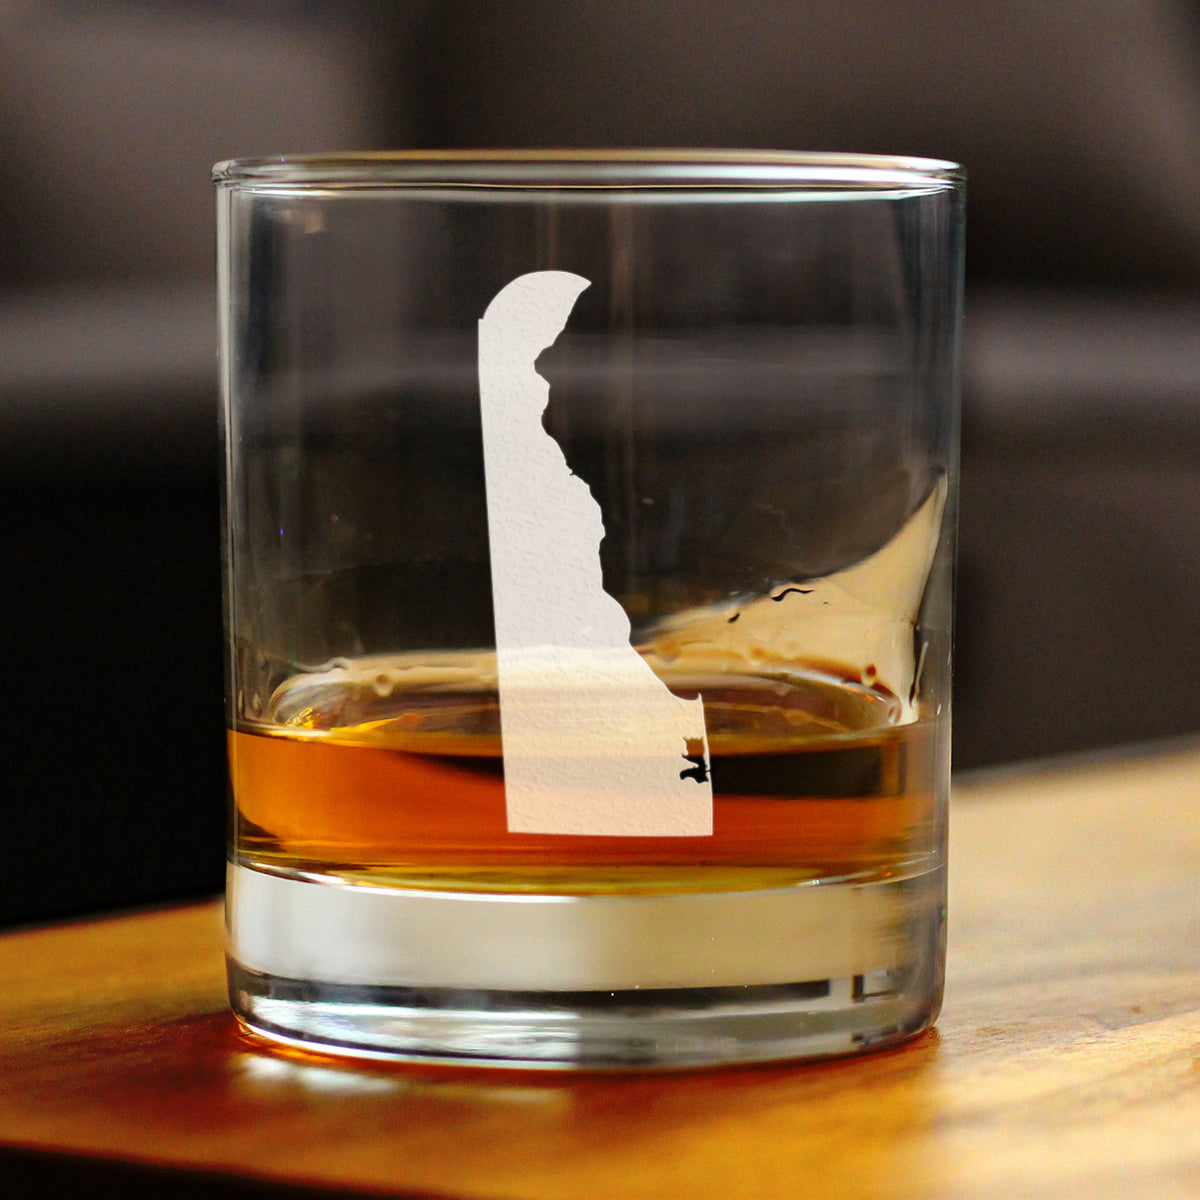 Delaware State Outline Whiskey Rocks Glass - State Themed Drinking Decor and Gifts for Delawarean Women &amp; Men - 10.25 Oz Whisky Tumbler Glasses